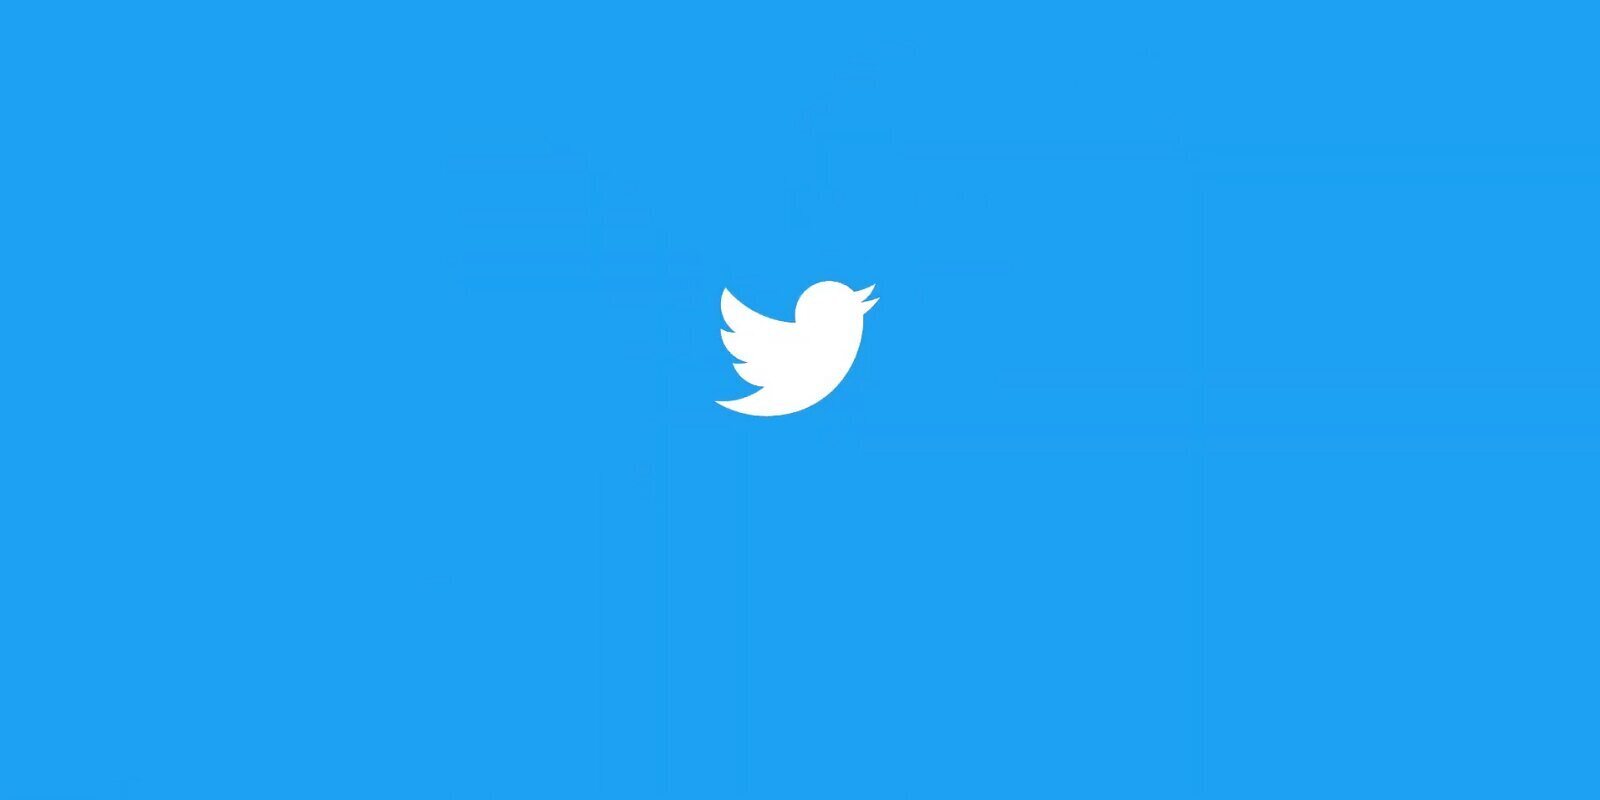 ¿Qué son los Artículos de Twitter? Descubren lo que podría llegar a través de ingeniería inversa